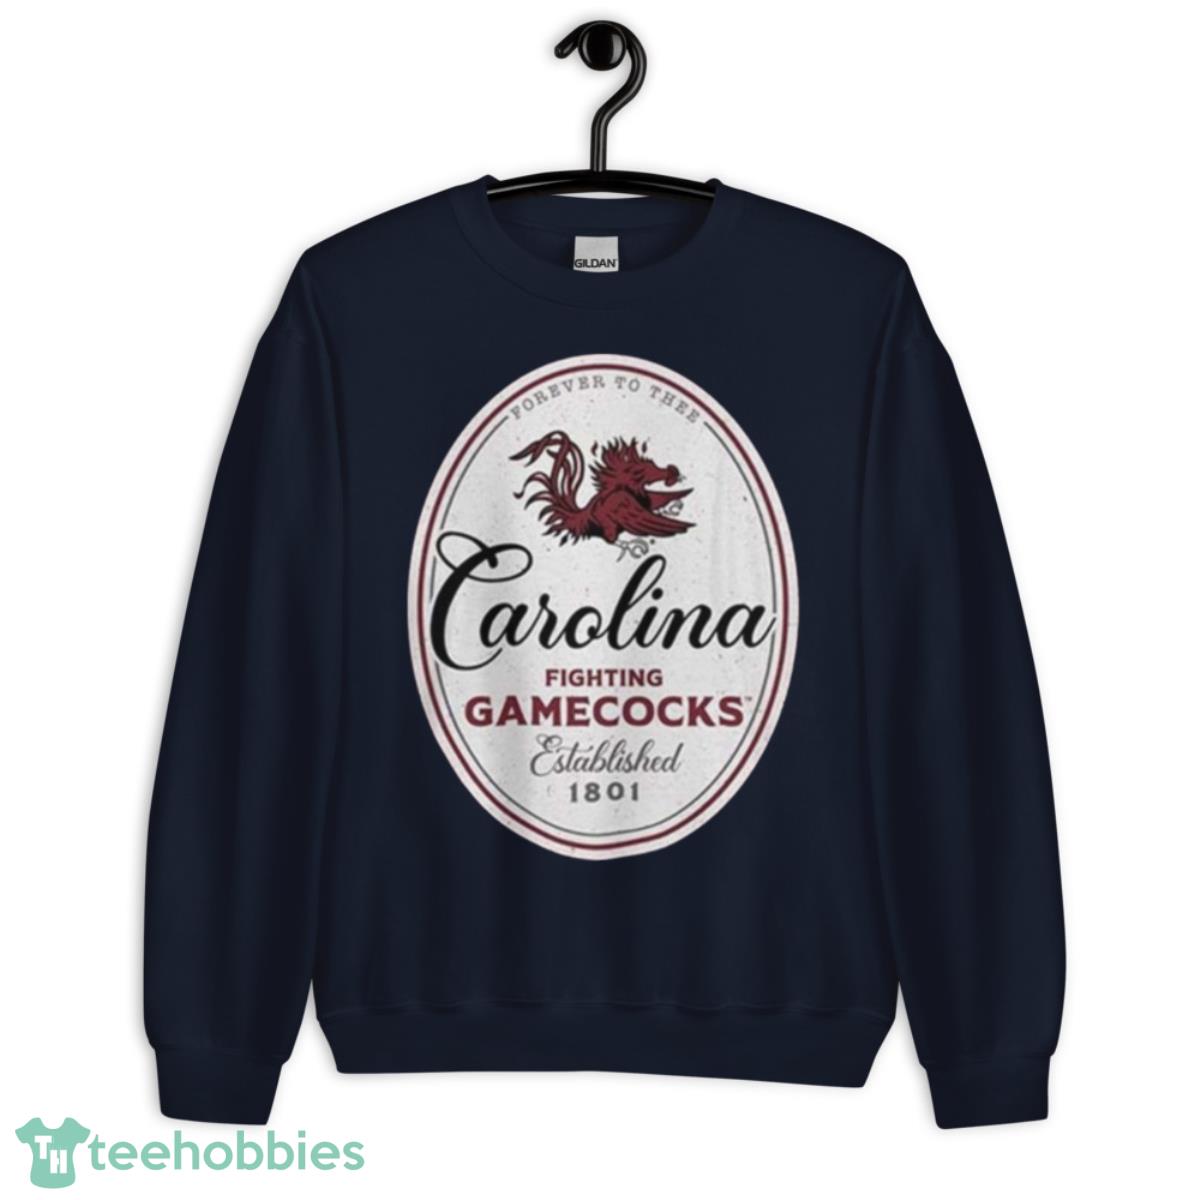 University Of South Carolina Gamecocks Label Carolina Fighting Gamecocks Shirt - Unisex Crewneck Sweatshirt-1